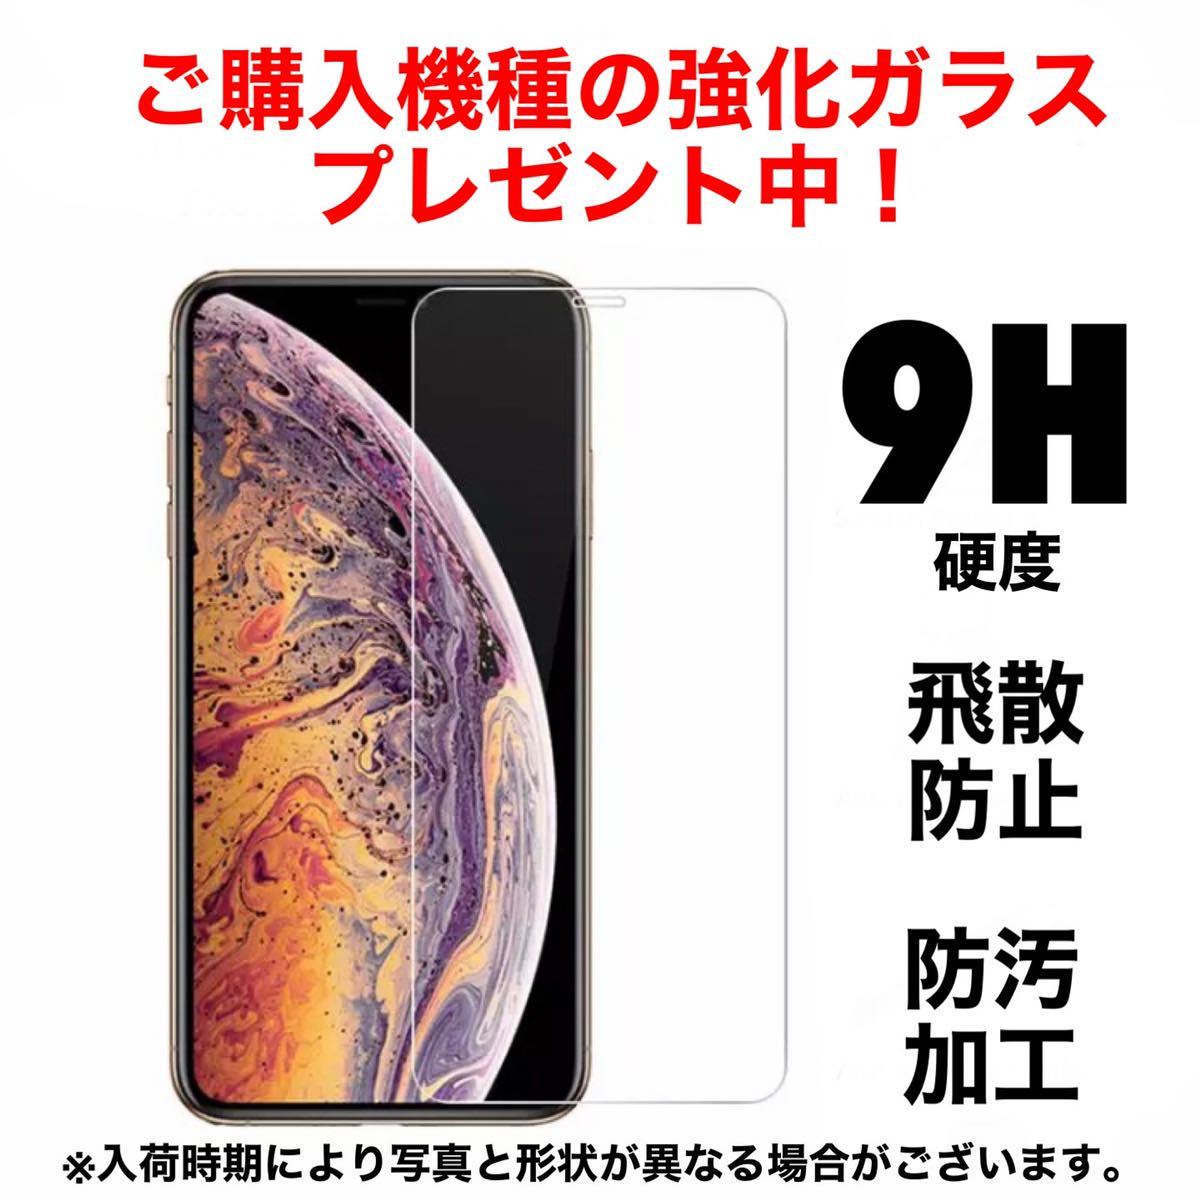 【強化ガラス付きプレゼント】iPhone7ケース iPhone8ケース iPhone SE3ケース 耐衝撃 衝撃吸収 軽量 画面割れ防止 強化ガラス_画像10